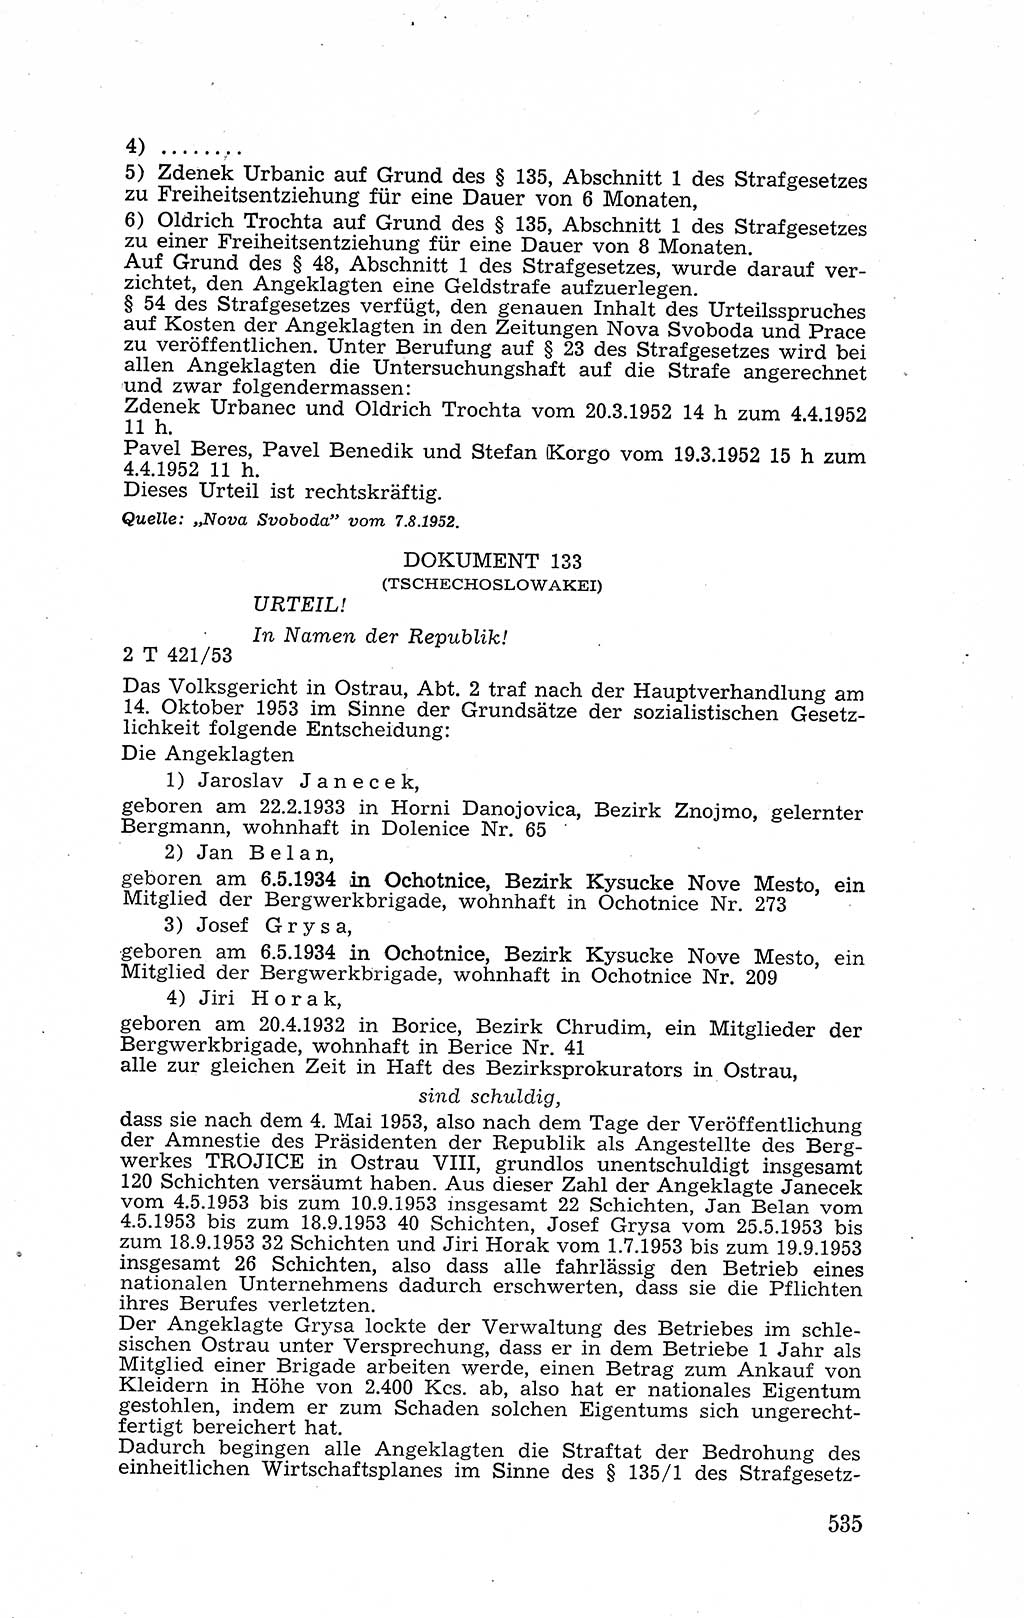 Recht in Fesseln, Dokumente, Internationale Juristen-Kommission [Bundesrepublik Deutschland (BRD)] 1955, Seite 535 (R. Dok. IJK BRD 1955, S. 535)